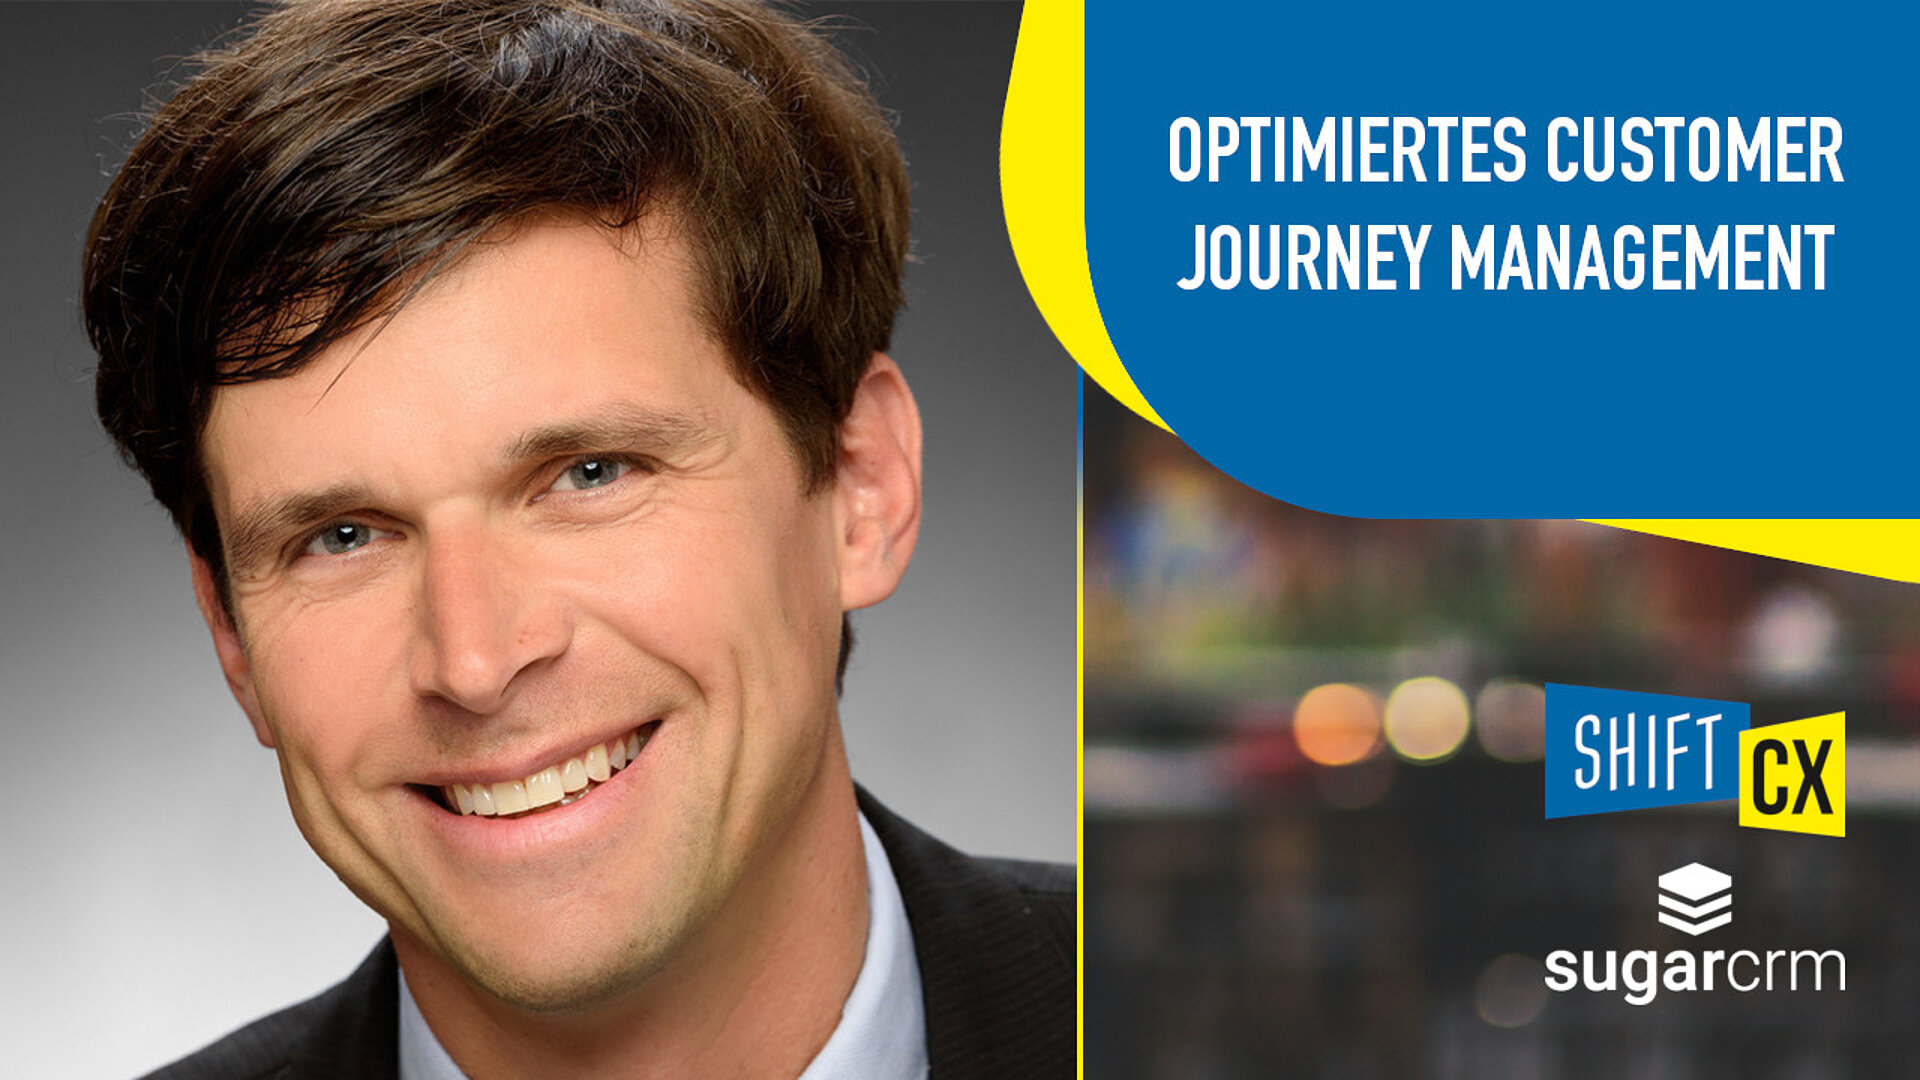 Optimiertes Customer Journey Management mit Hilfe einer integrierten Customer Experience Plattform